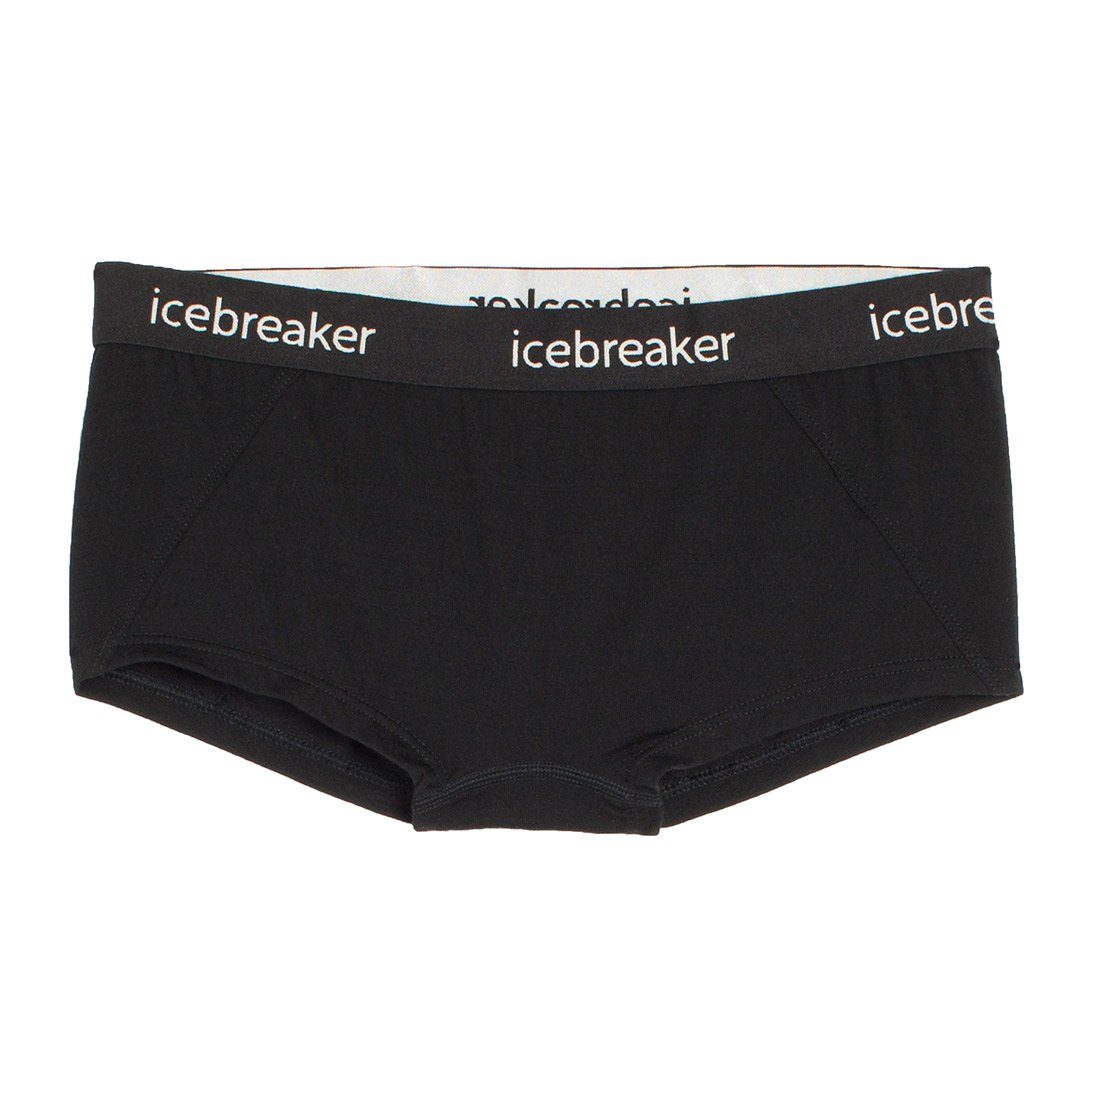 Wäsche/Bademode Unterhosen Icebreaker Boxershorts Damen Pants Sprite Hot Pants